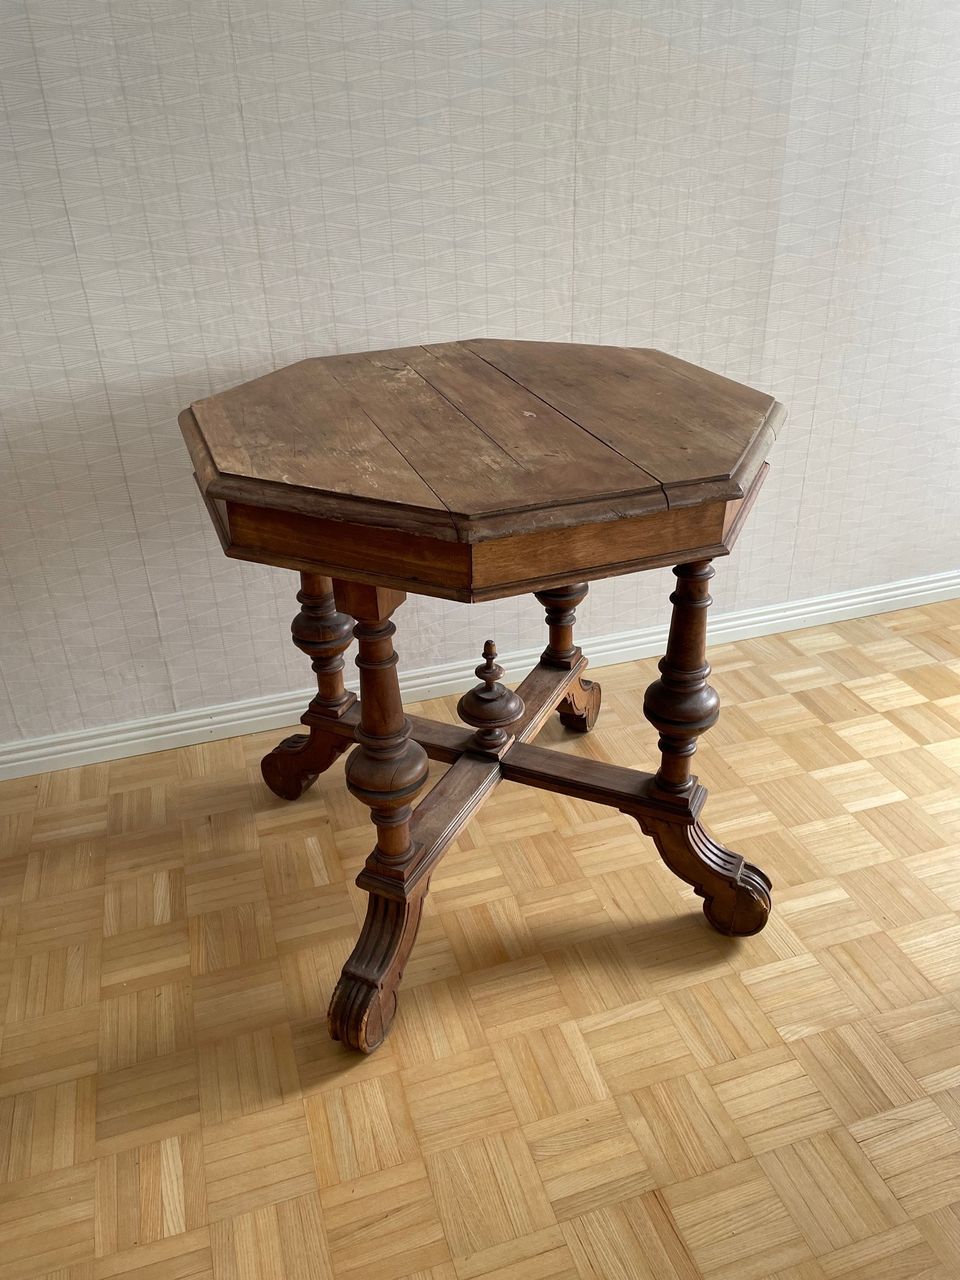 Antiikkinen pöytä korkeus 75cm halkaisija 80cm